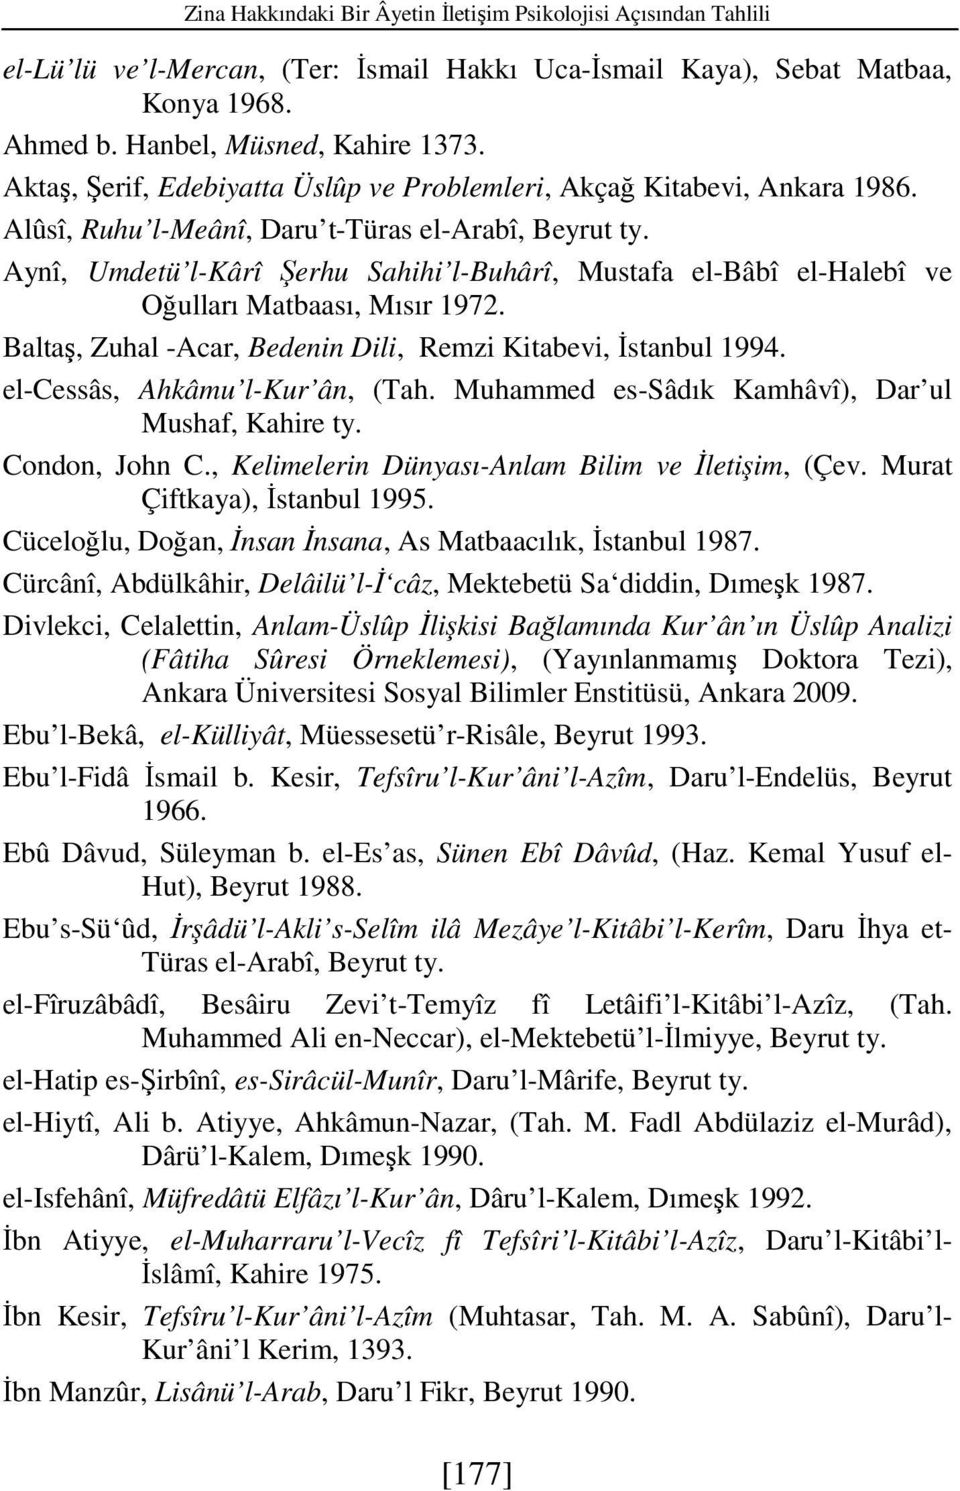 Aynî, Umdetü l-kârî Şerhu Sahihi l-buhârî, Mustafa el-bâbî el-halebî ve Oğulları Matbaası, Mısır 1972. Baltaş, Zuhal -Acar, Bedenin Dili, Remzi Kitabevi, Đstanbul 1994.